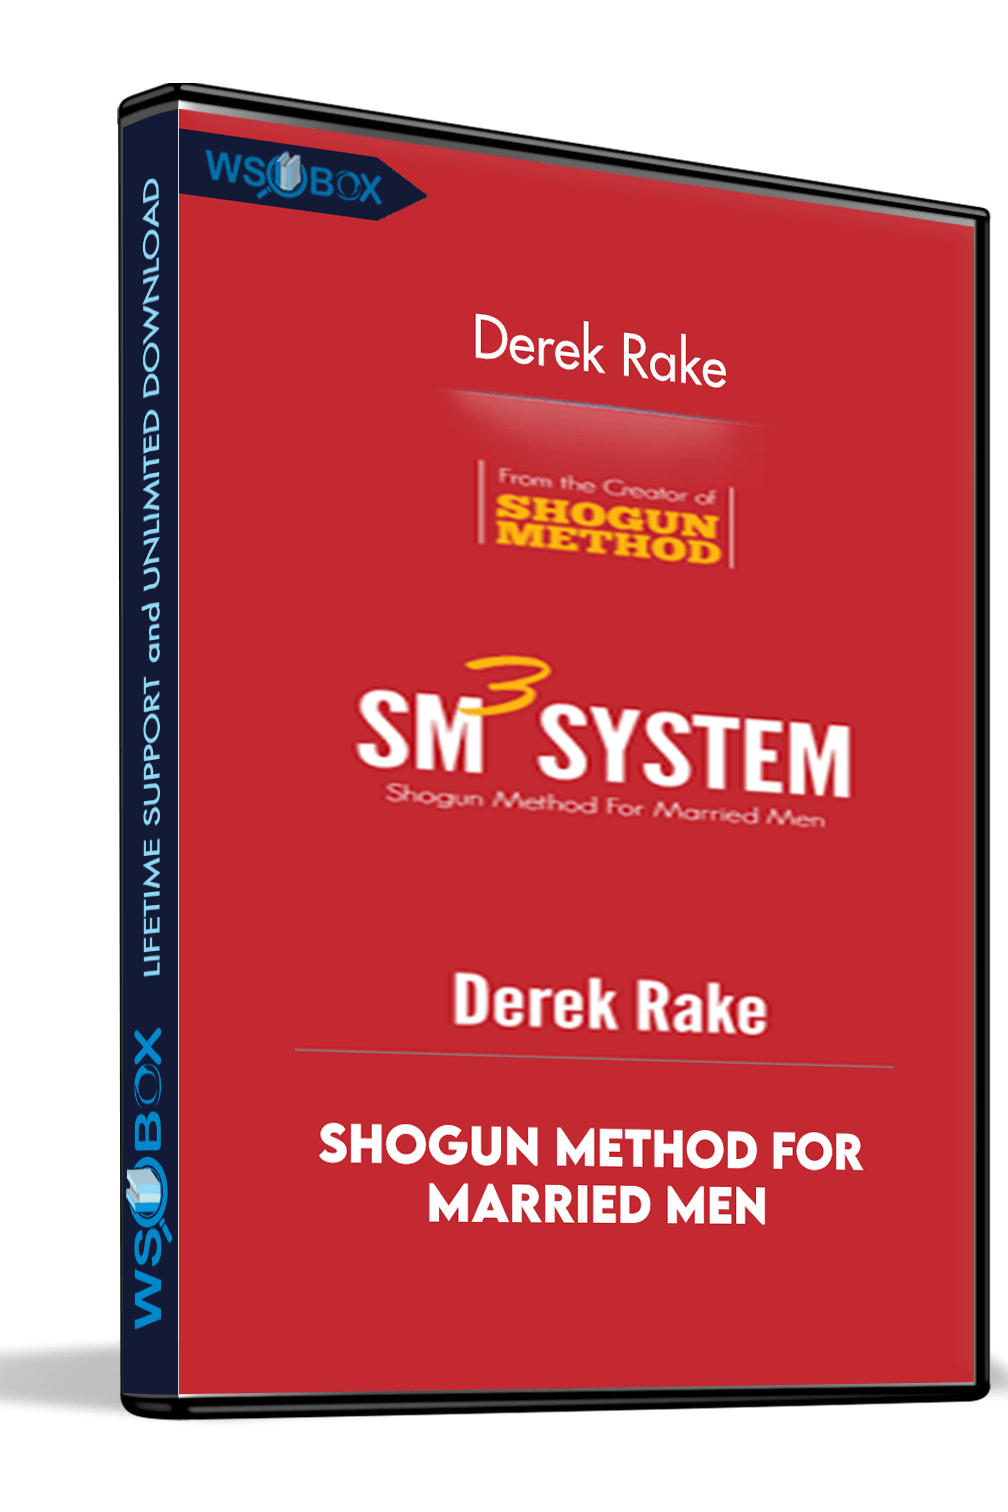 shogun-method-for-married-men-derek-rake